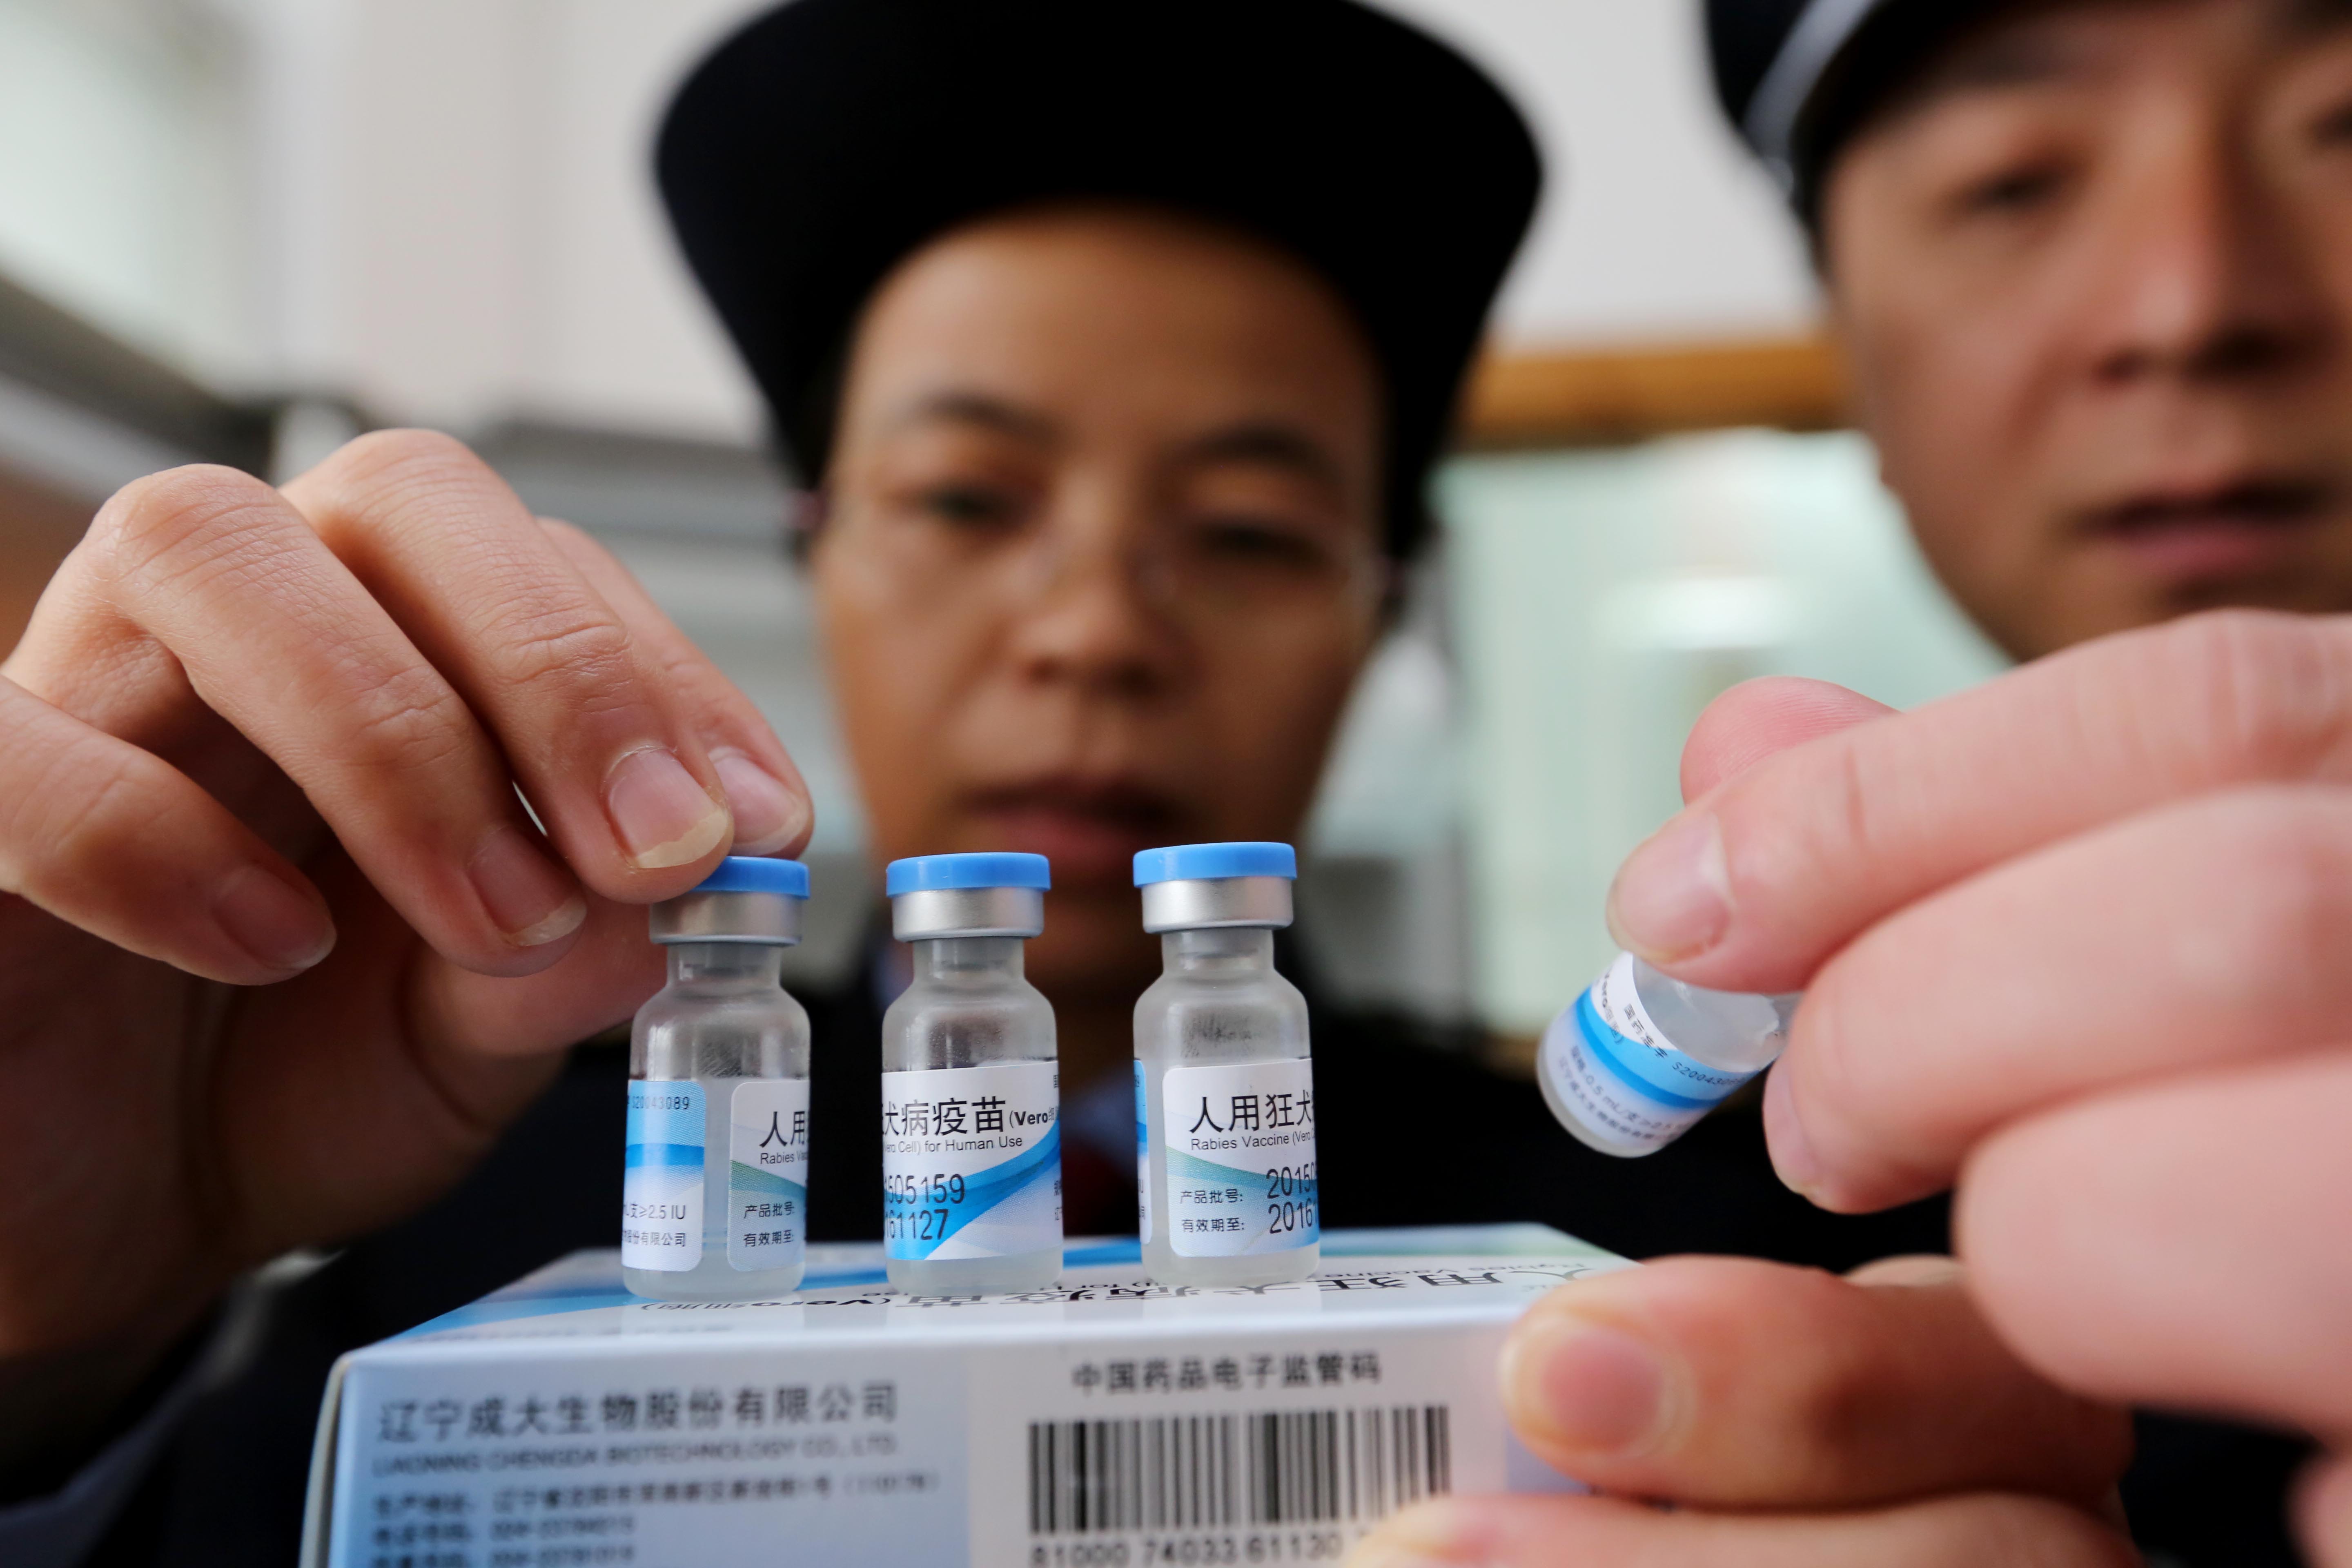 Chinese vaccine in Coronavirus: 3